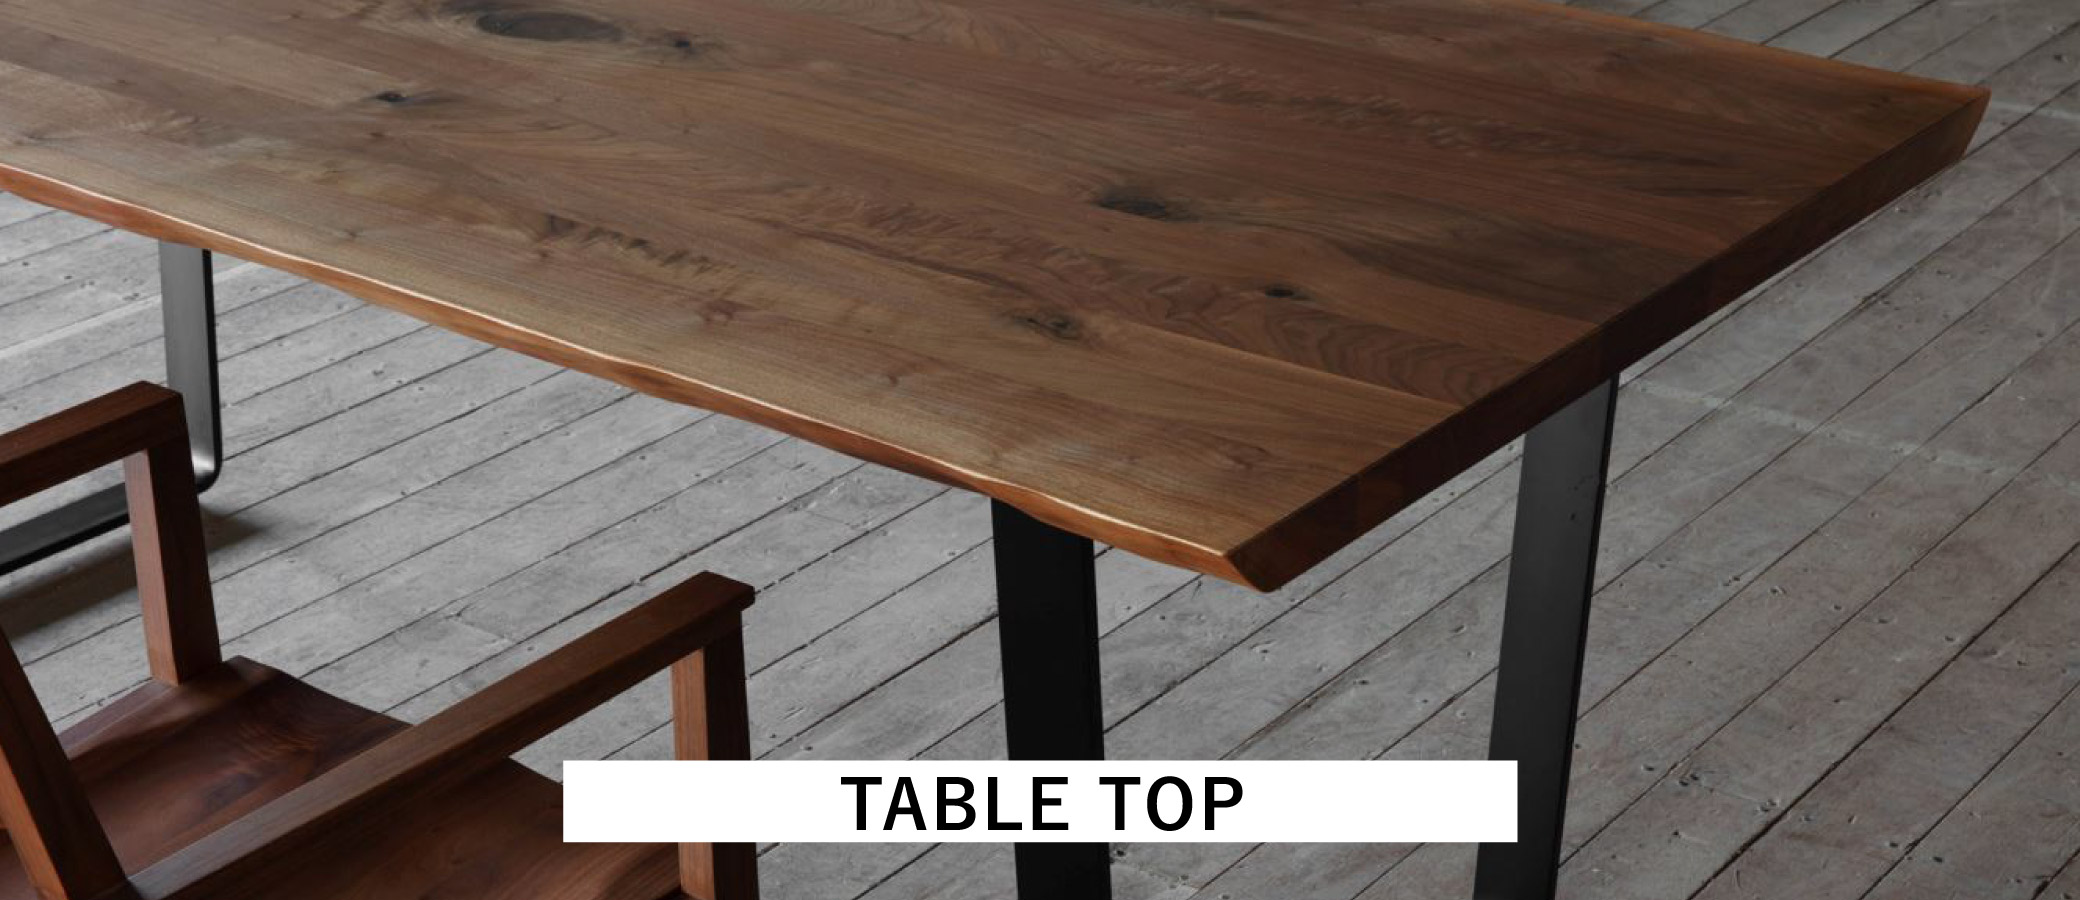 好みやお部屋に合わせてテーブルの厚みが選べられます。名古屋にある家具屋さんで無垢材を使用した家具ならではのオーダーが可能です。